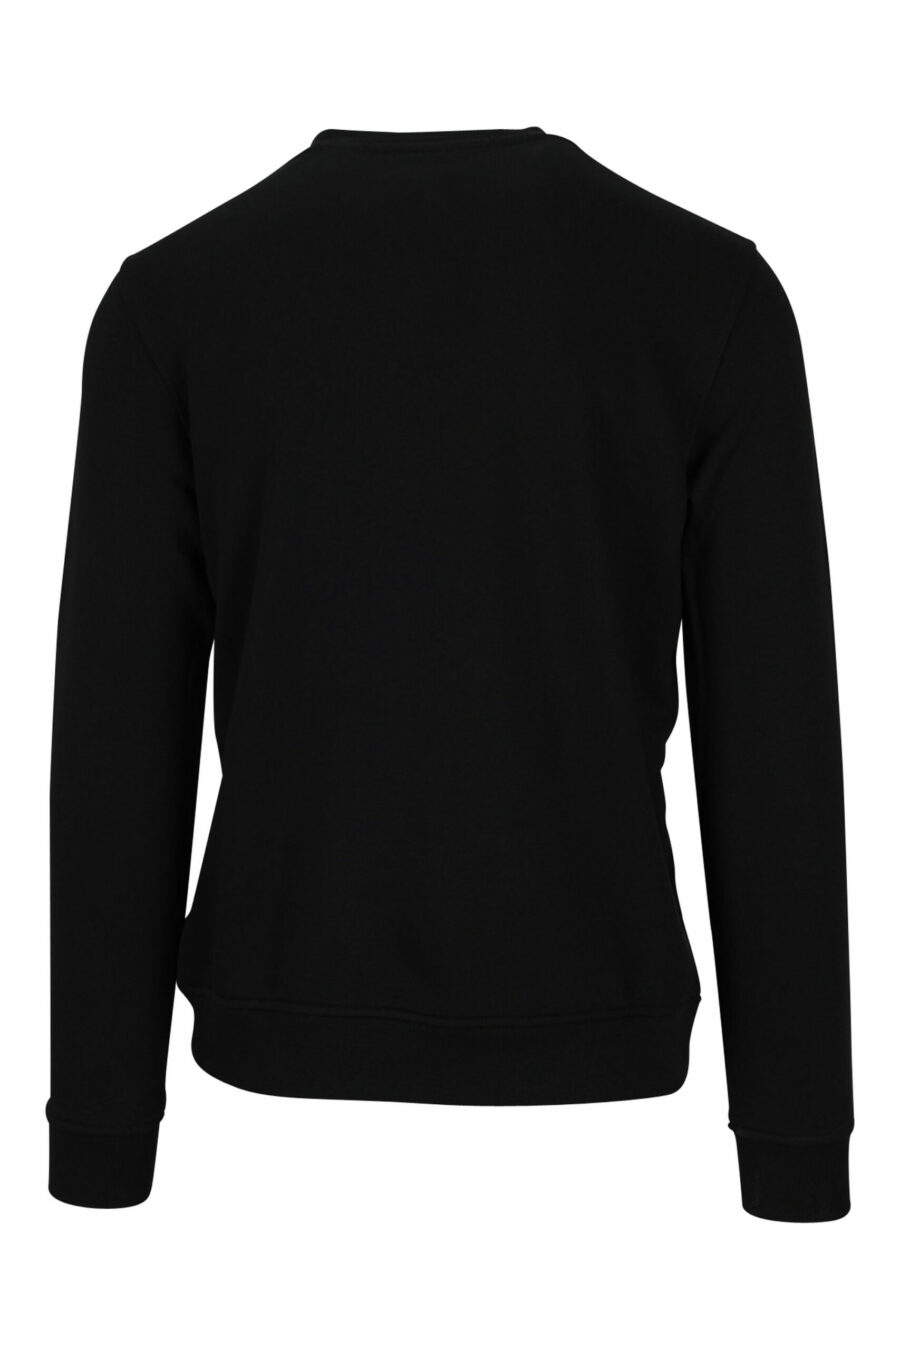 Schwarzes Sweatshirt mit einfarbigem Gummi-Maxilogo - 4062226393256 1 skaliert